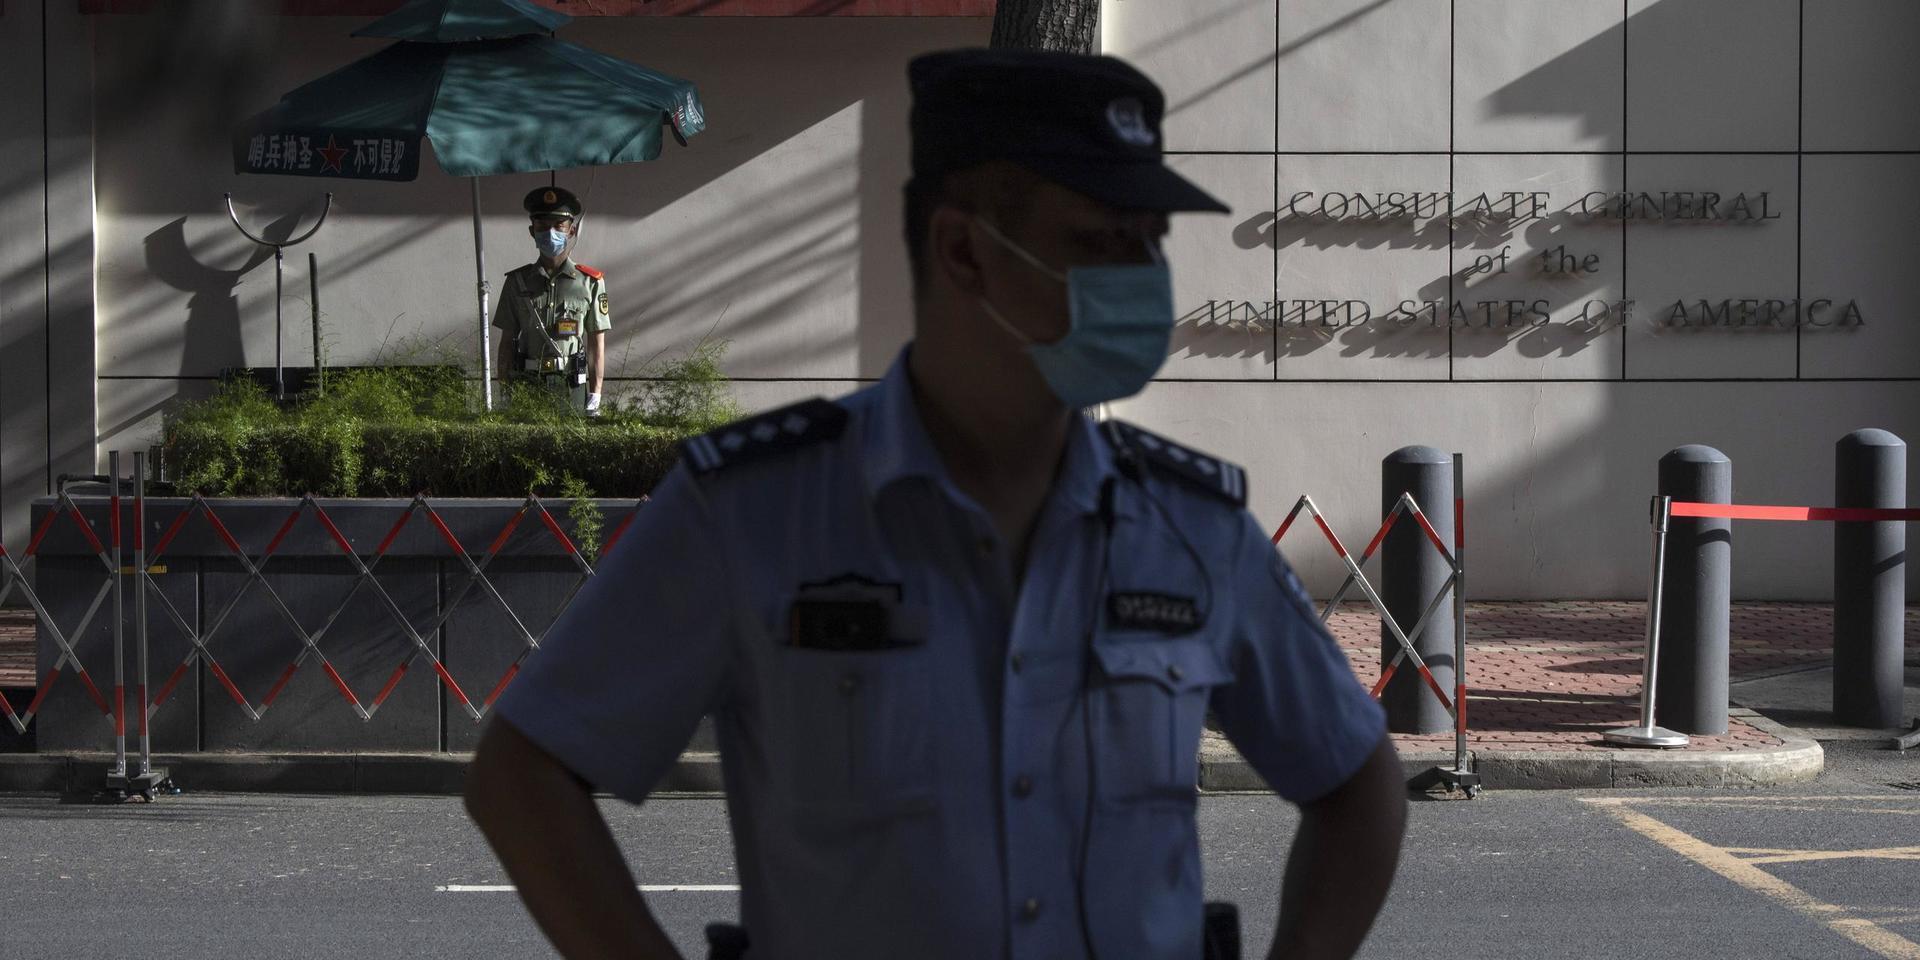 Kinesisk säkerhetspersonal utanför det amerikanska konsulatet i den kinesiska staden Chengdu. Under fredagen beordrade Kina att USA skulle stänga ned konsulatet efter att USA beordrat Kina att stänga sitt konsulat tidigare i veckan.